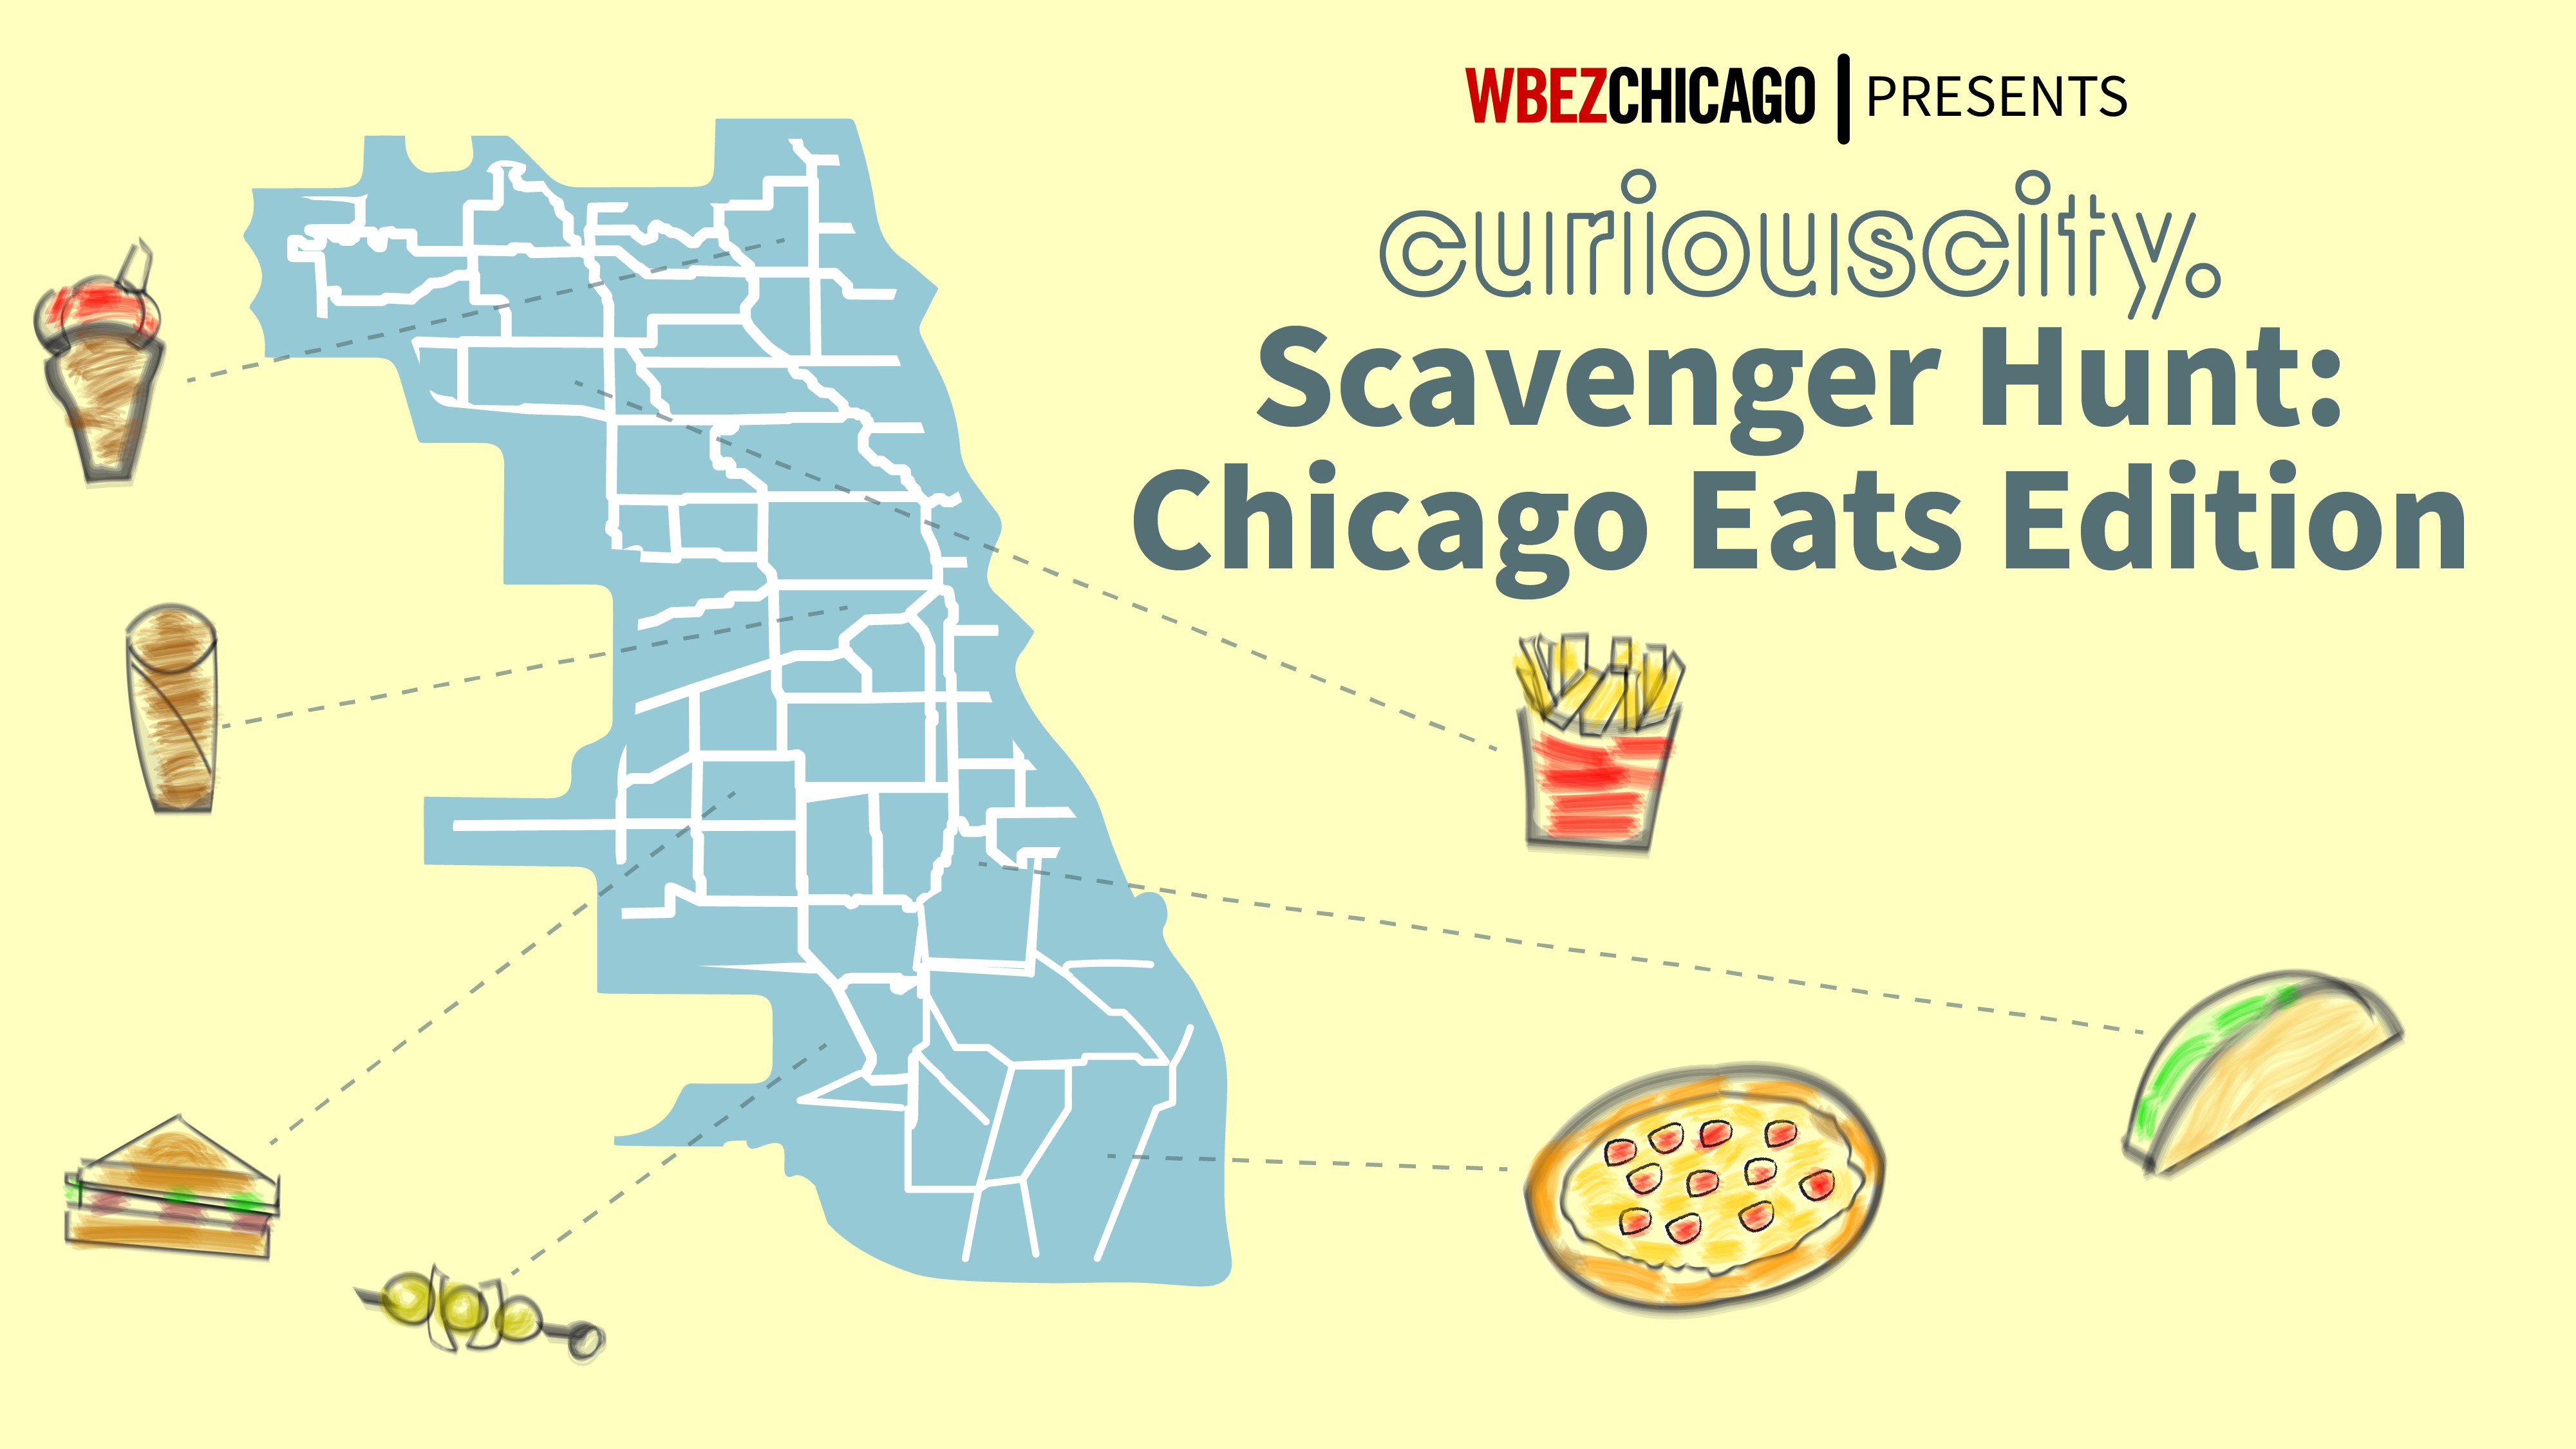 curious-city-scavenger-hunt-chicago-eats-edition-wbez-chicago